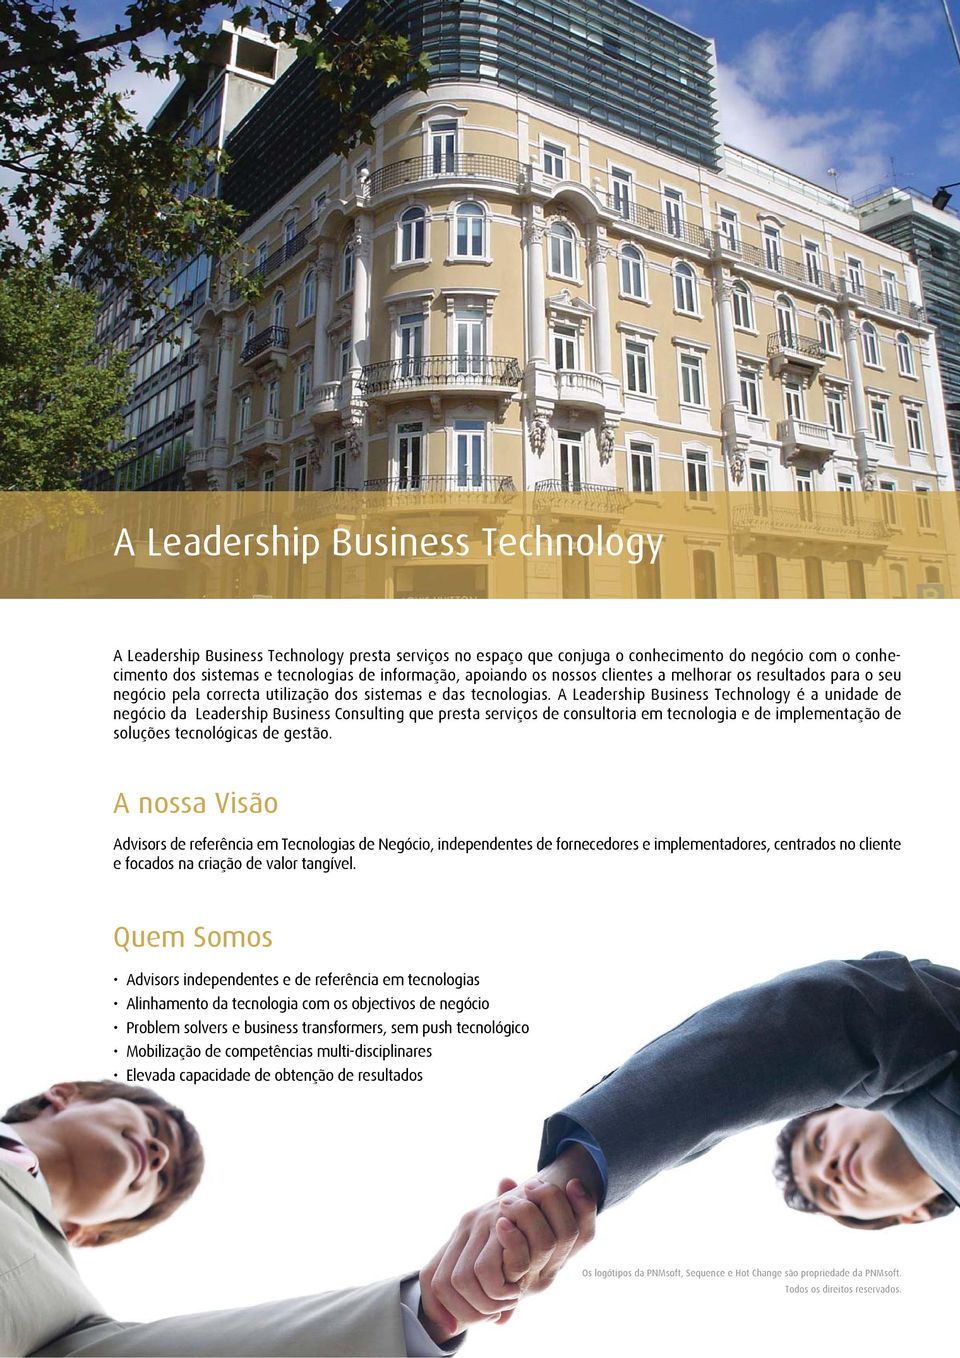 A Leadership Business Technology é a unidade de negócio da Leadership Business Consulting que presta serviços de consultoria em tecnologia e de implementação de soluções tecnológicas de gestão.